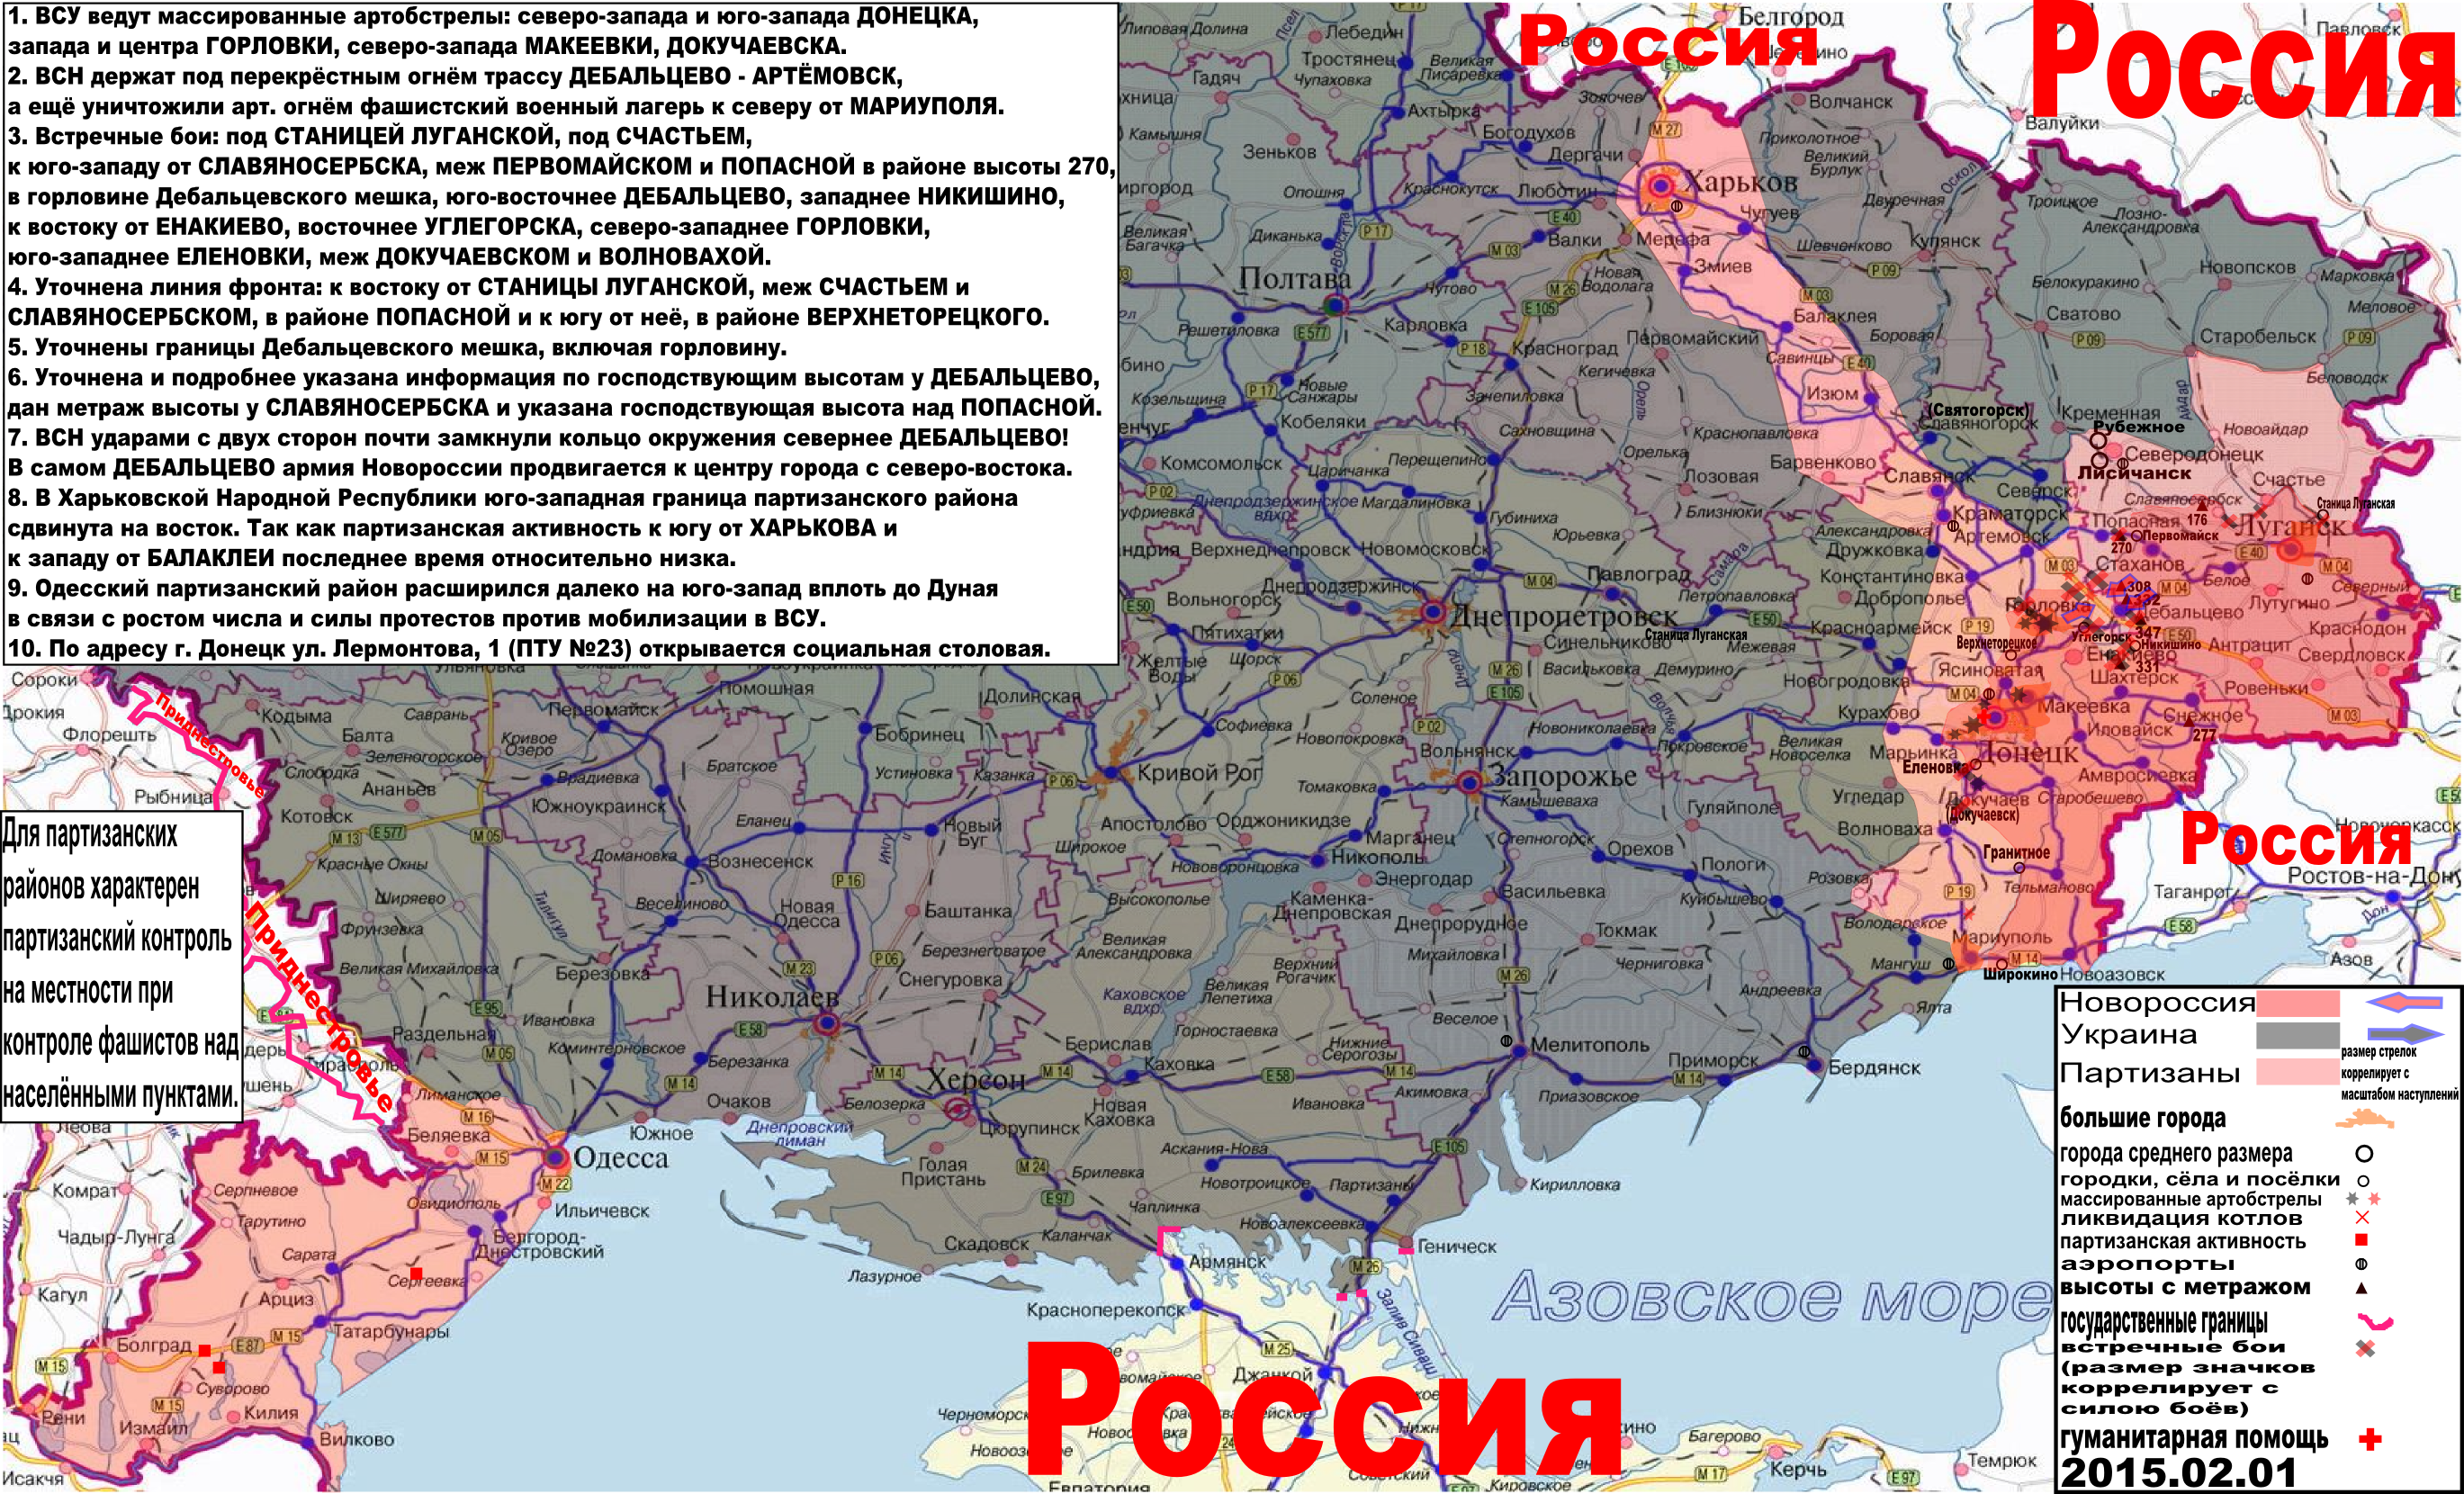 Карта боевых действий и событий в Новороссии с обозначением зон партизанской активности за 1 февраля